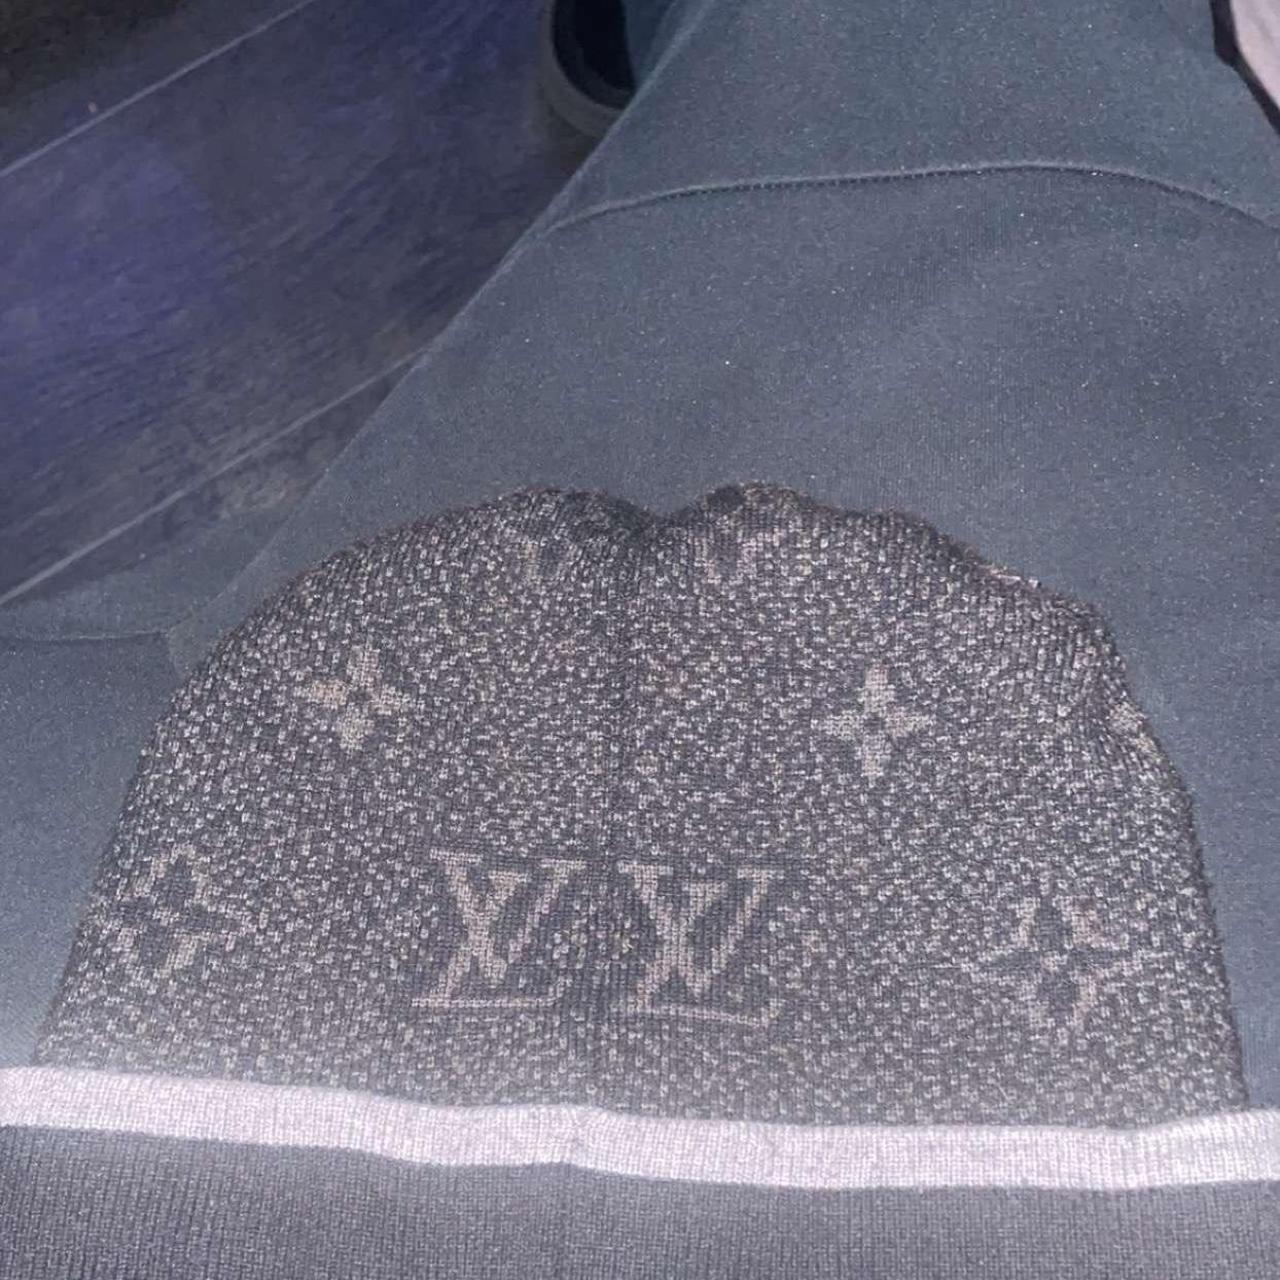 Louis Vuitton hat come cop it!!!! It go hard